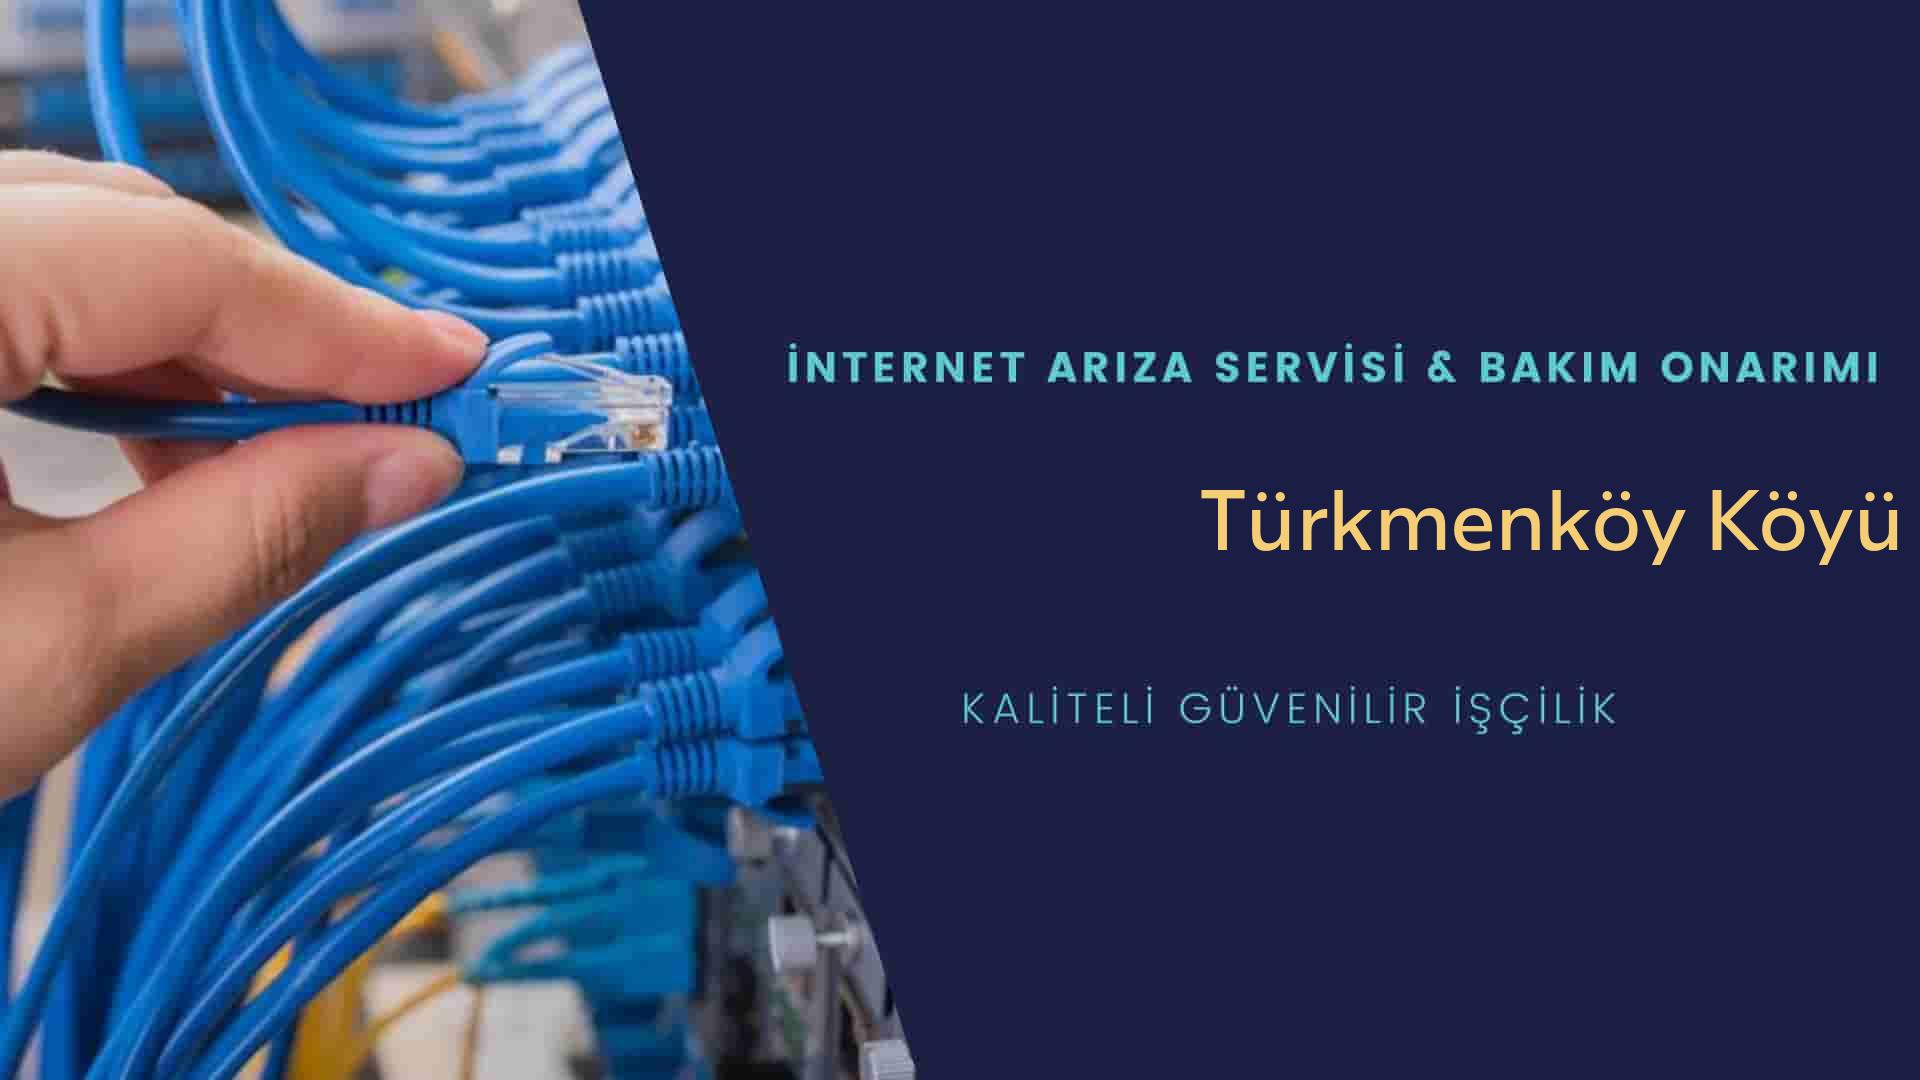 Türkmenköy Köyü internet kablosu çekimi yapan yerler veya elektrikçiler mi? arıyorsunuz doğru yerdesiniz o zaman sizlere 7/24 yardımcı olacak profesyonel ustalarımız bir telefon kadar yakındır size.